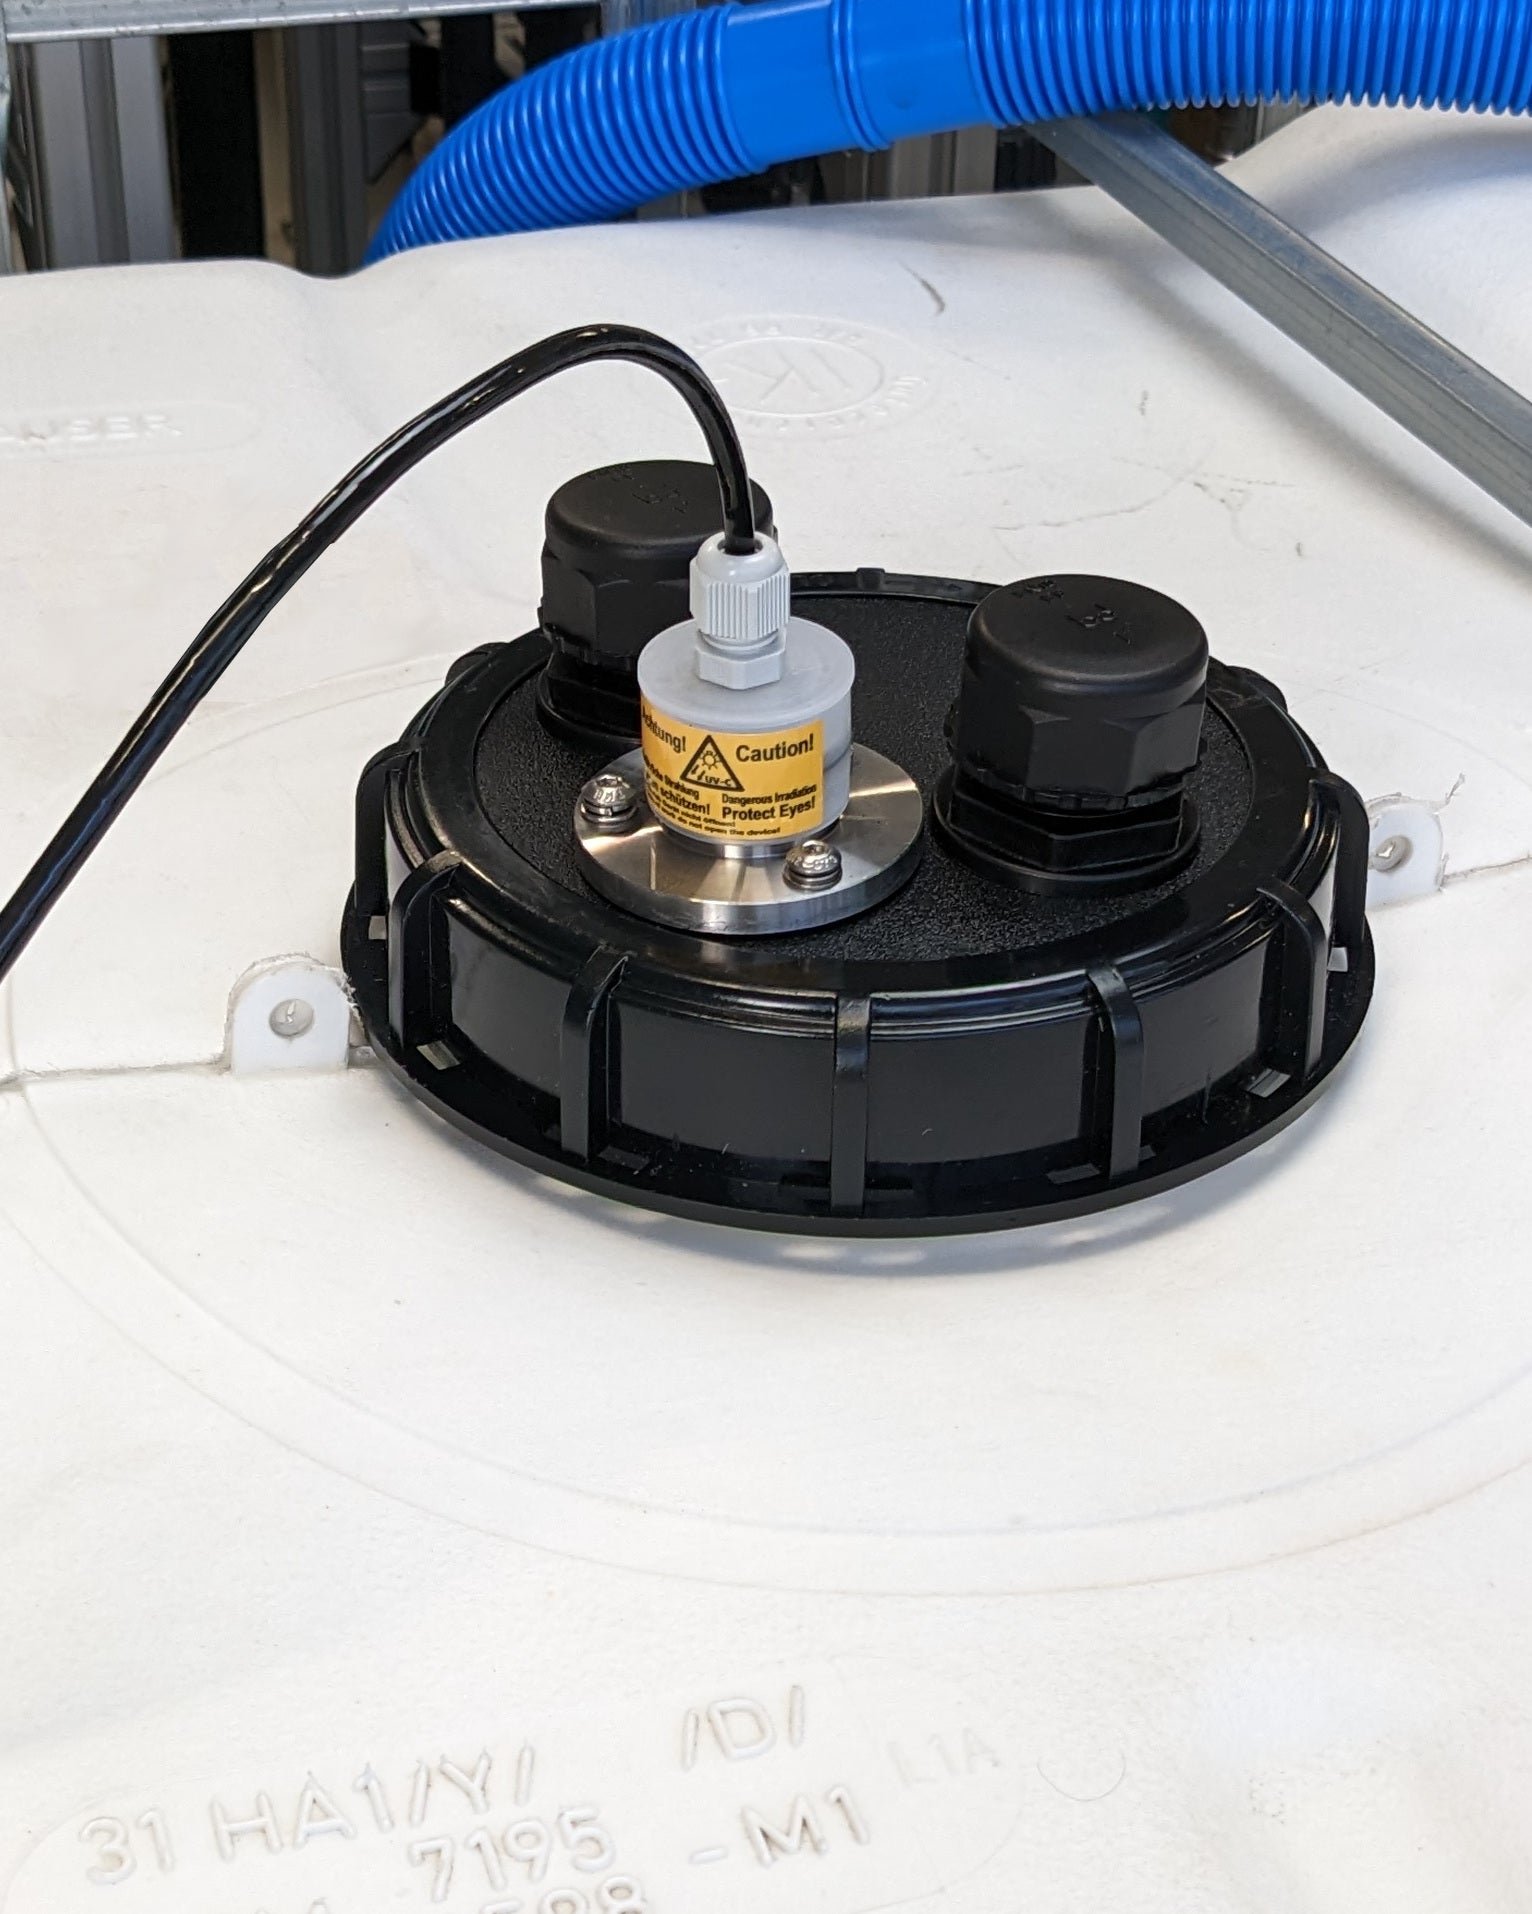 Eine Maschine mit angeschlossenem Schlauch, die Trinkwasserqualität sicherstellt, indem sie Verkeimungen effektiv beseitigt, die PURION IBC DN150 17W SPL BS OTC von der UV Concept GmbH.